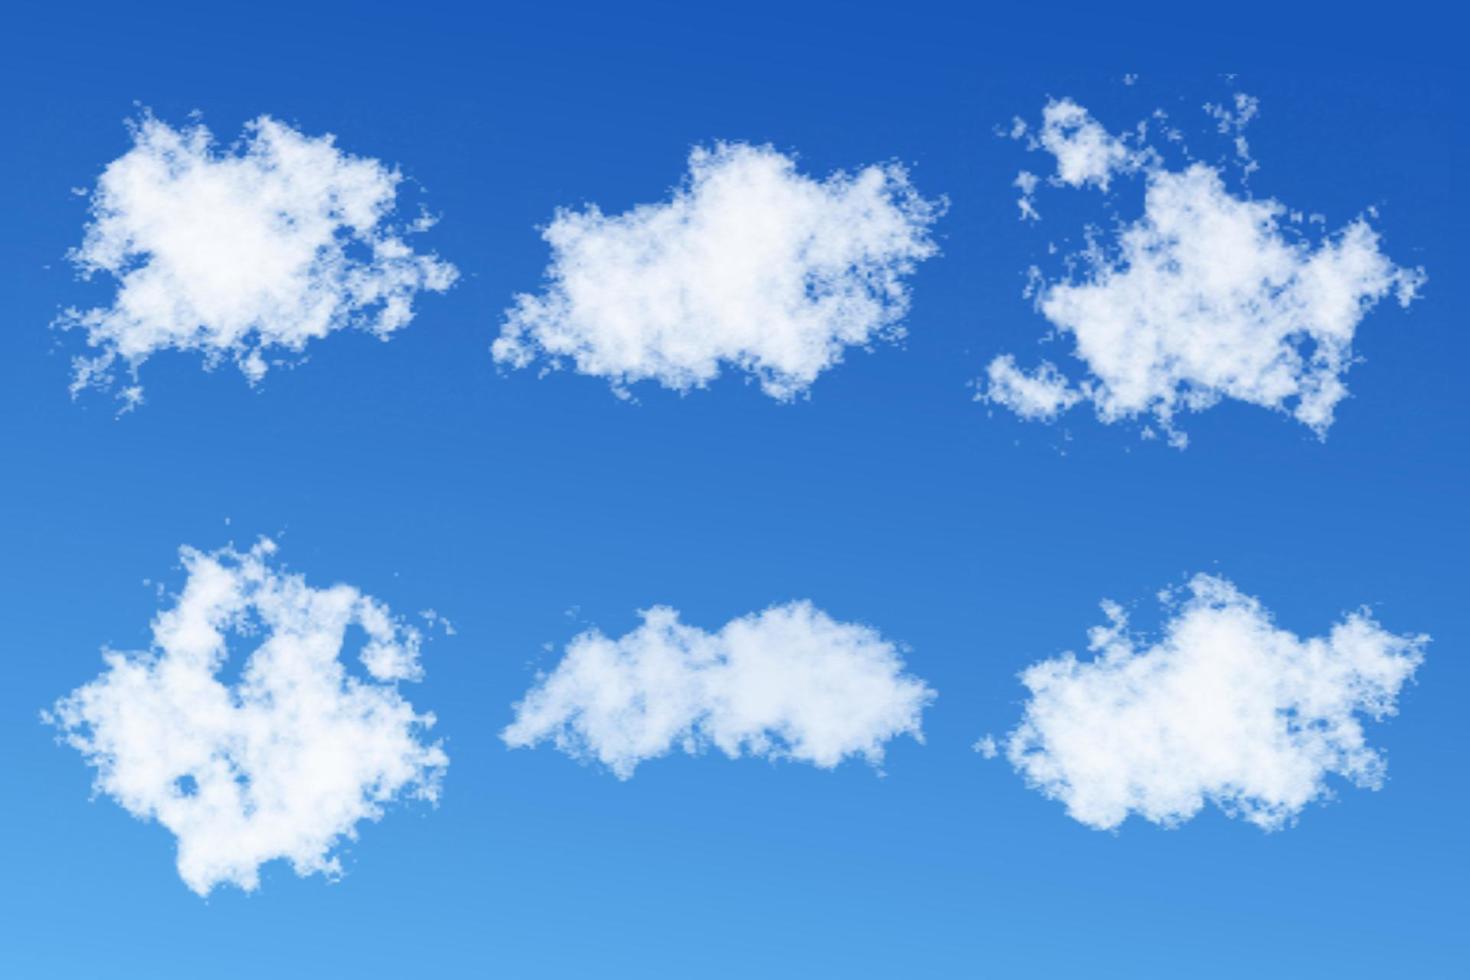 realistische witte wolken met blauwe hemelachtergrond vector